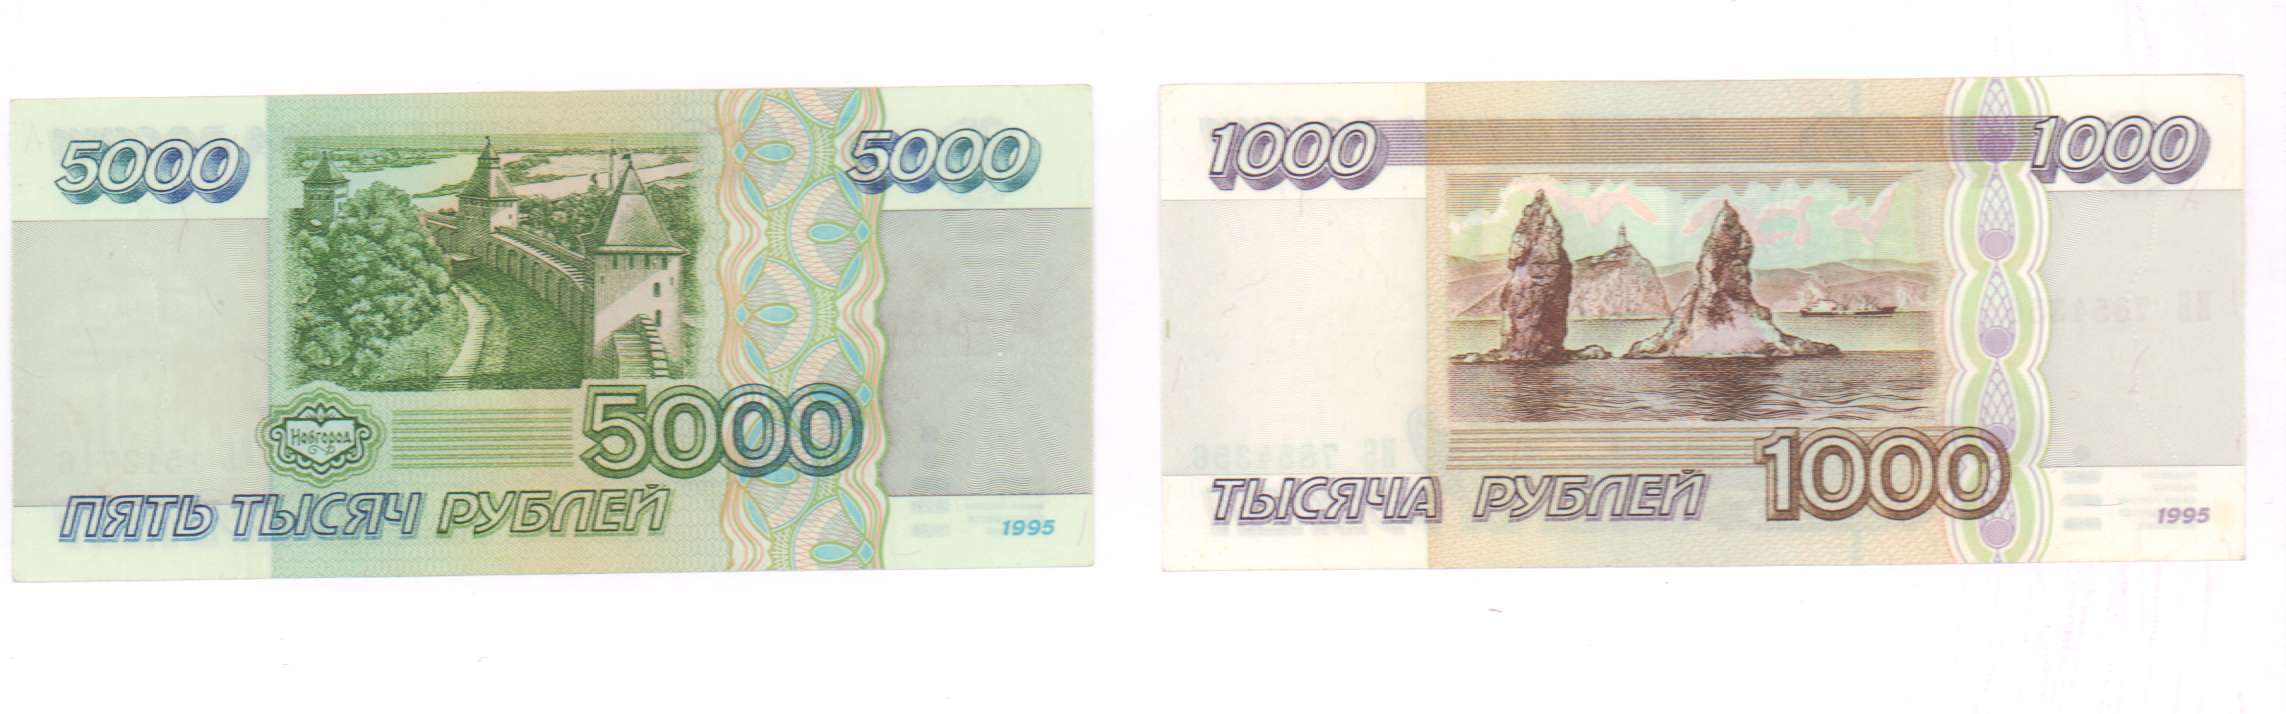 5000 рублей 1995. 5000 Рублей 1995 года. 5000 Тысяч 1995. 1000 Рублей реверс. 5000 И 1000 рублей 1995 года.